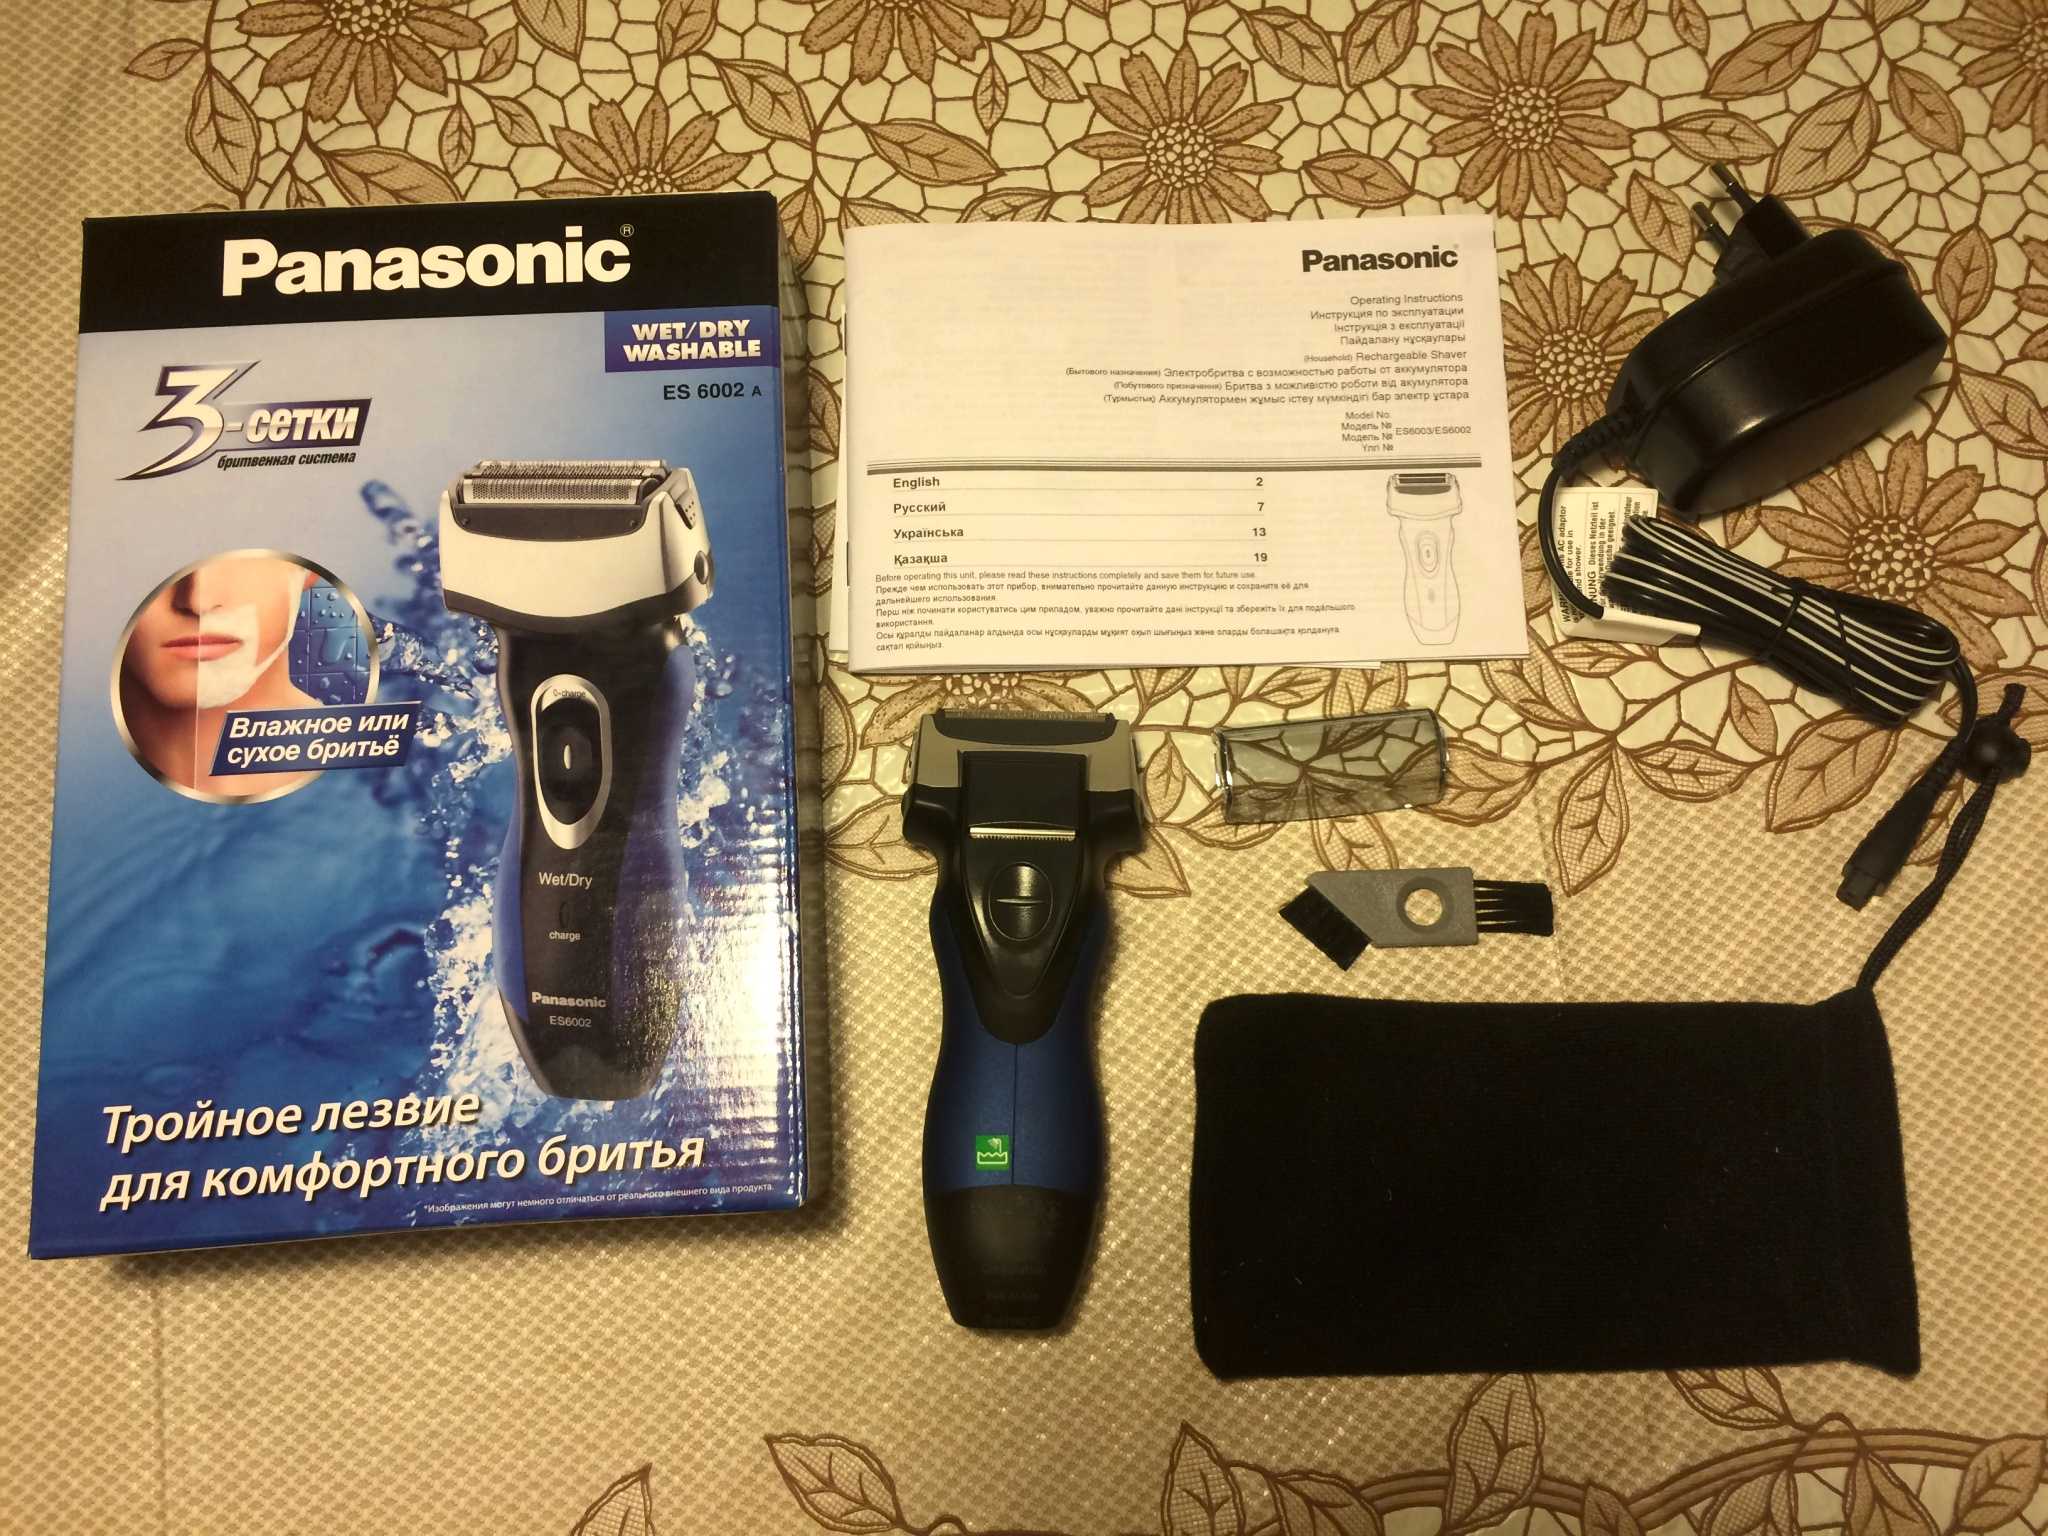 Panasonic ES-6002 - короткий но максимально информативный обзор Для большего удобства добавлены характеристики отзывы и видео